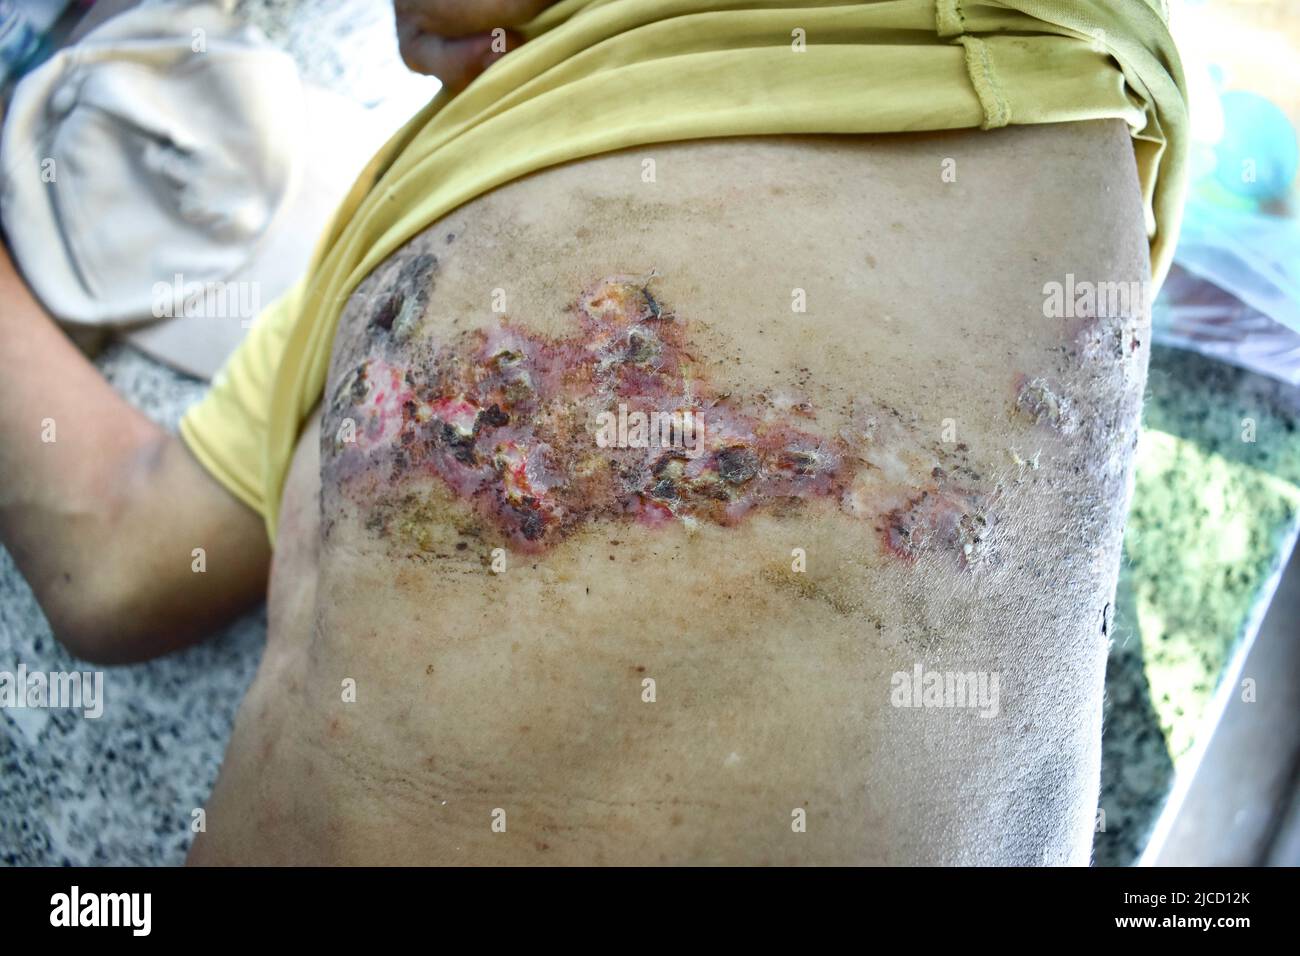 Infezione simplex da herpes al petto e addome dell'uomo asiatico. Foto Stock